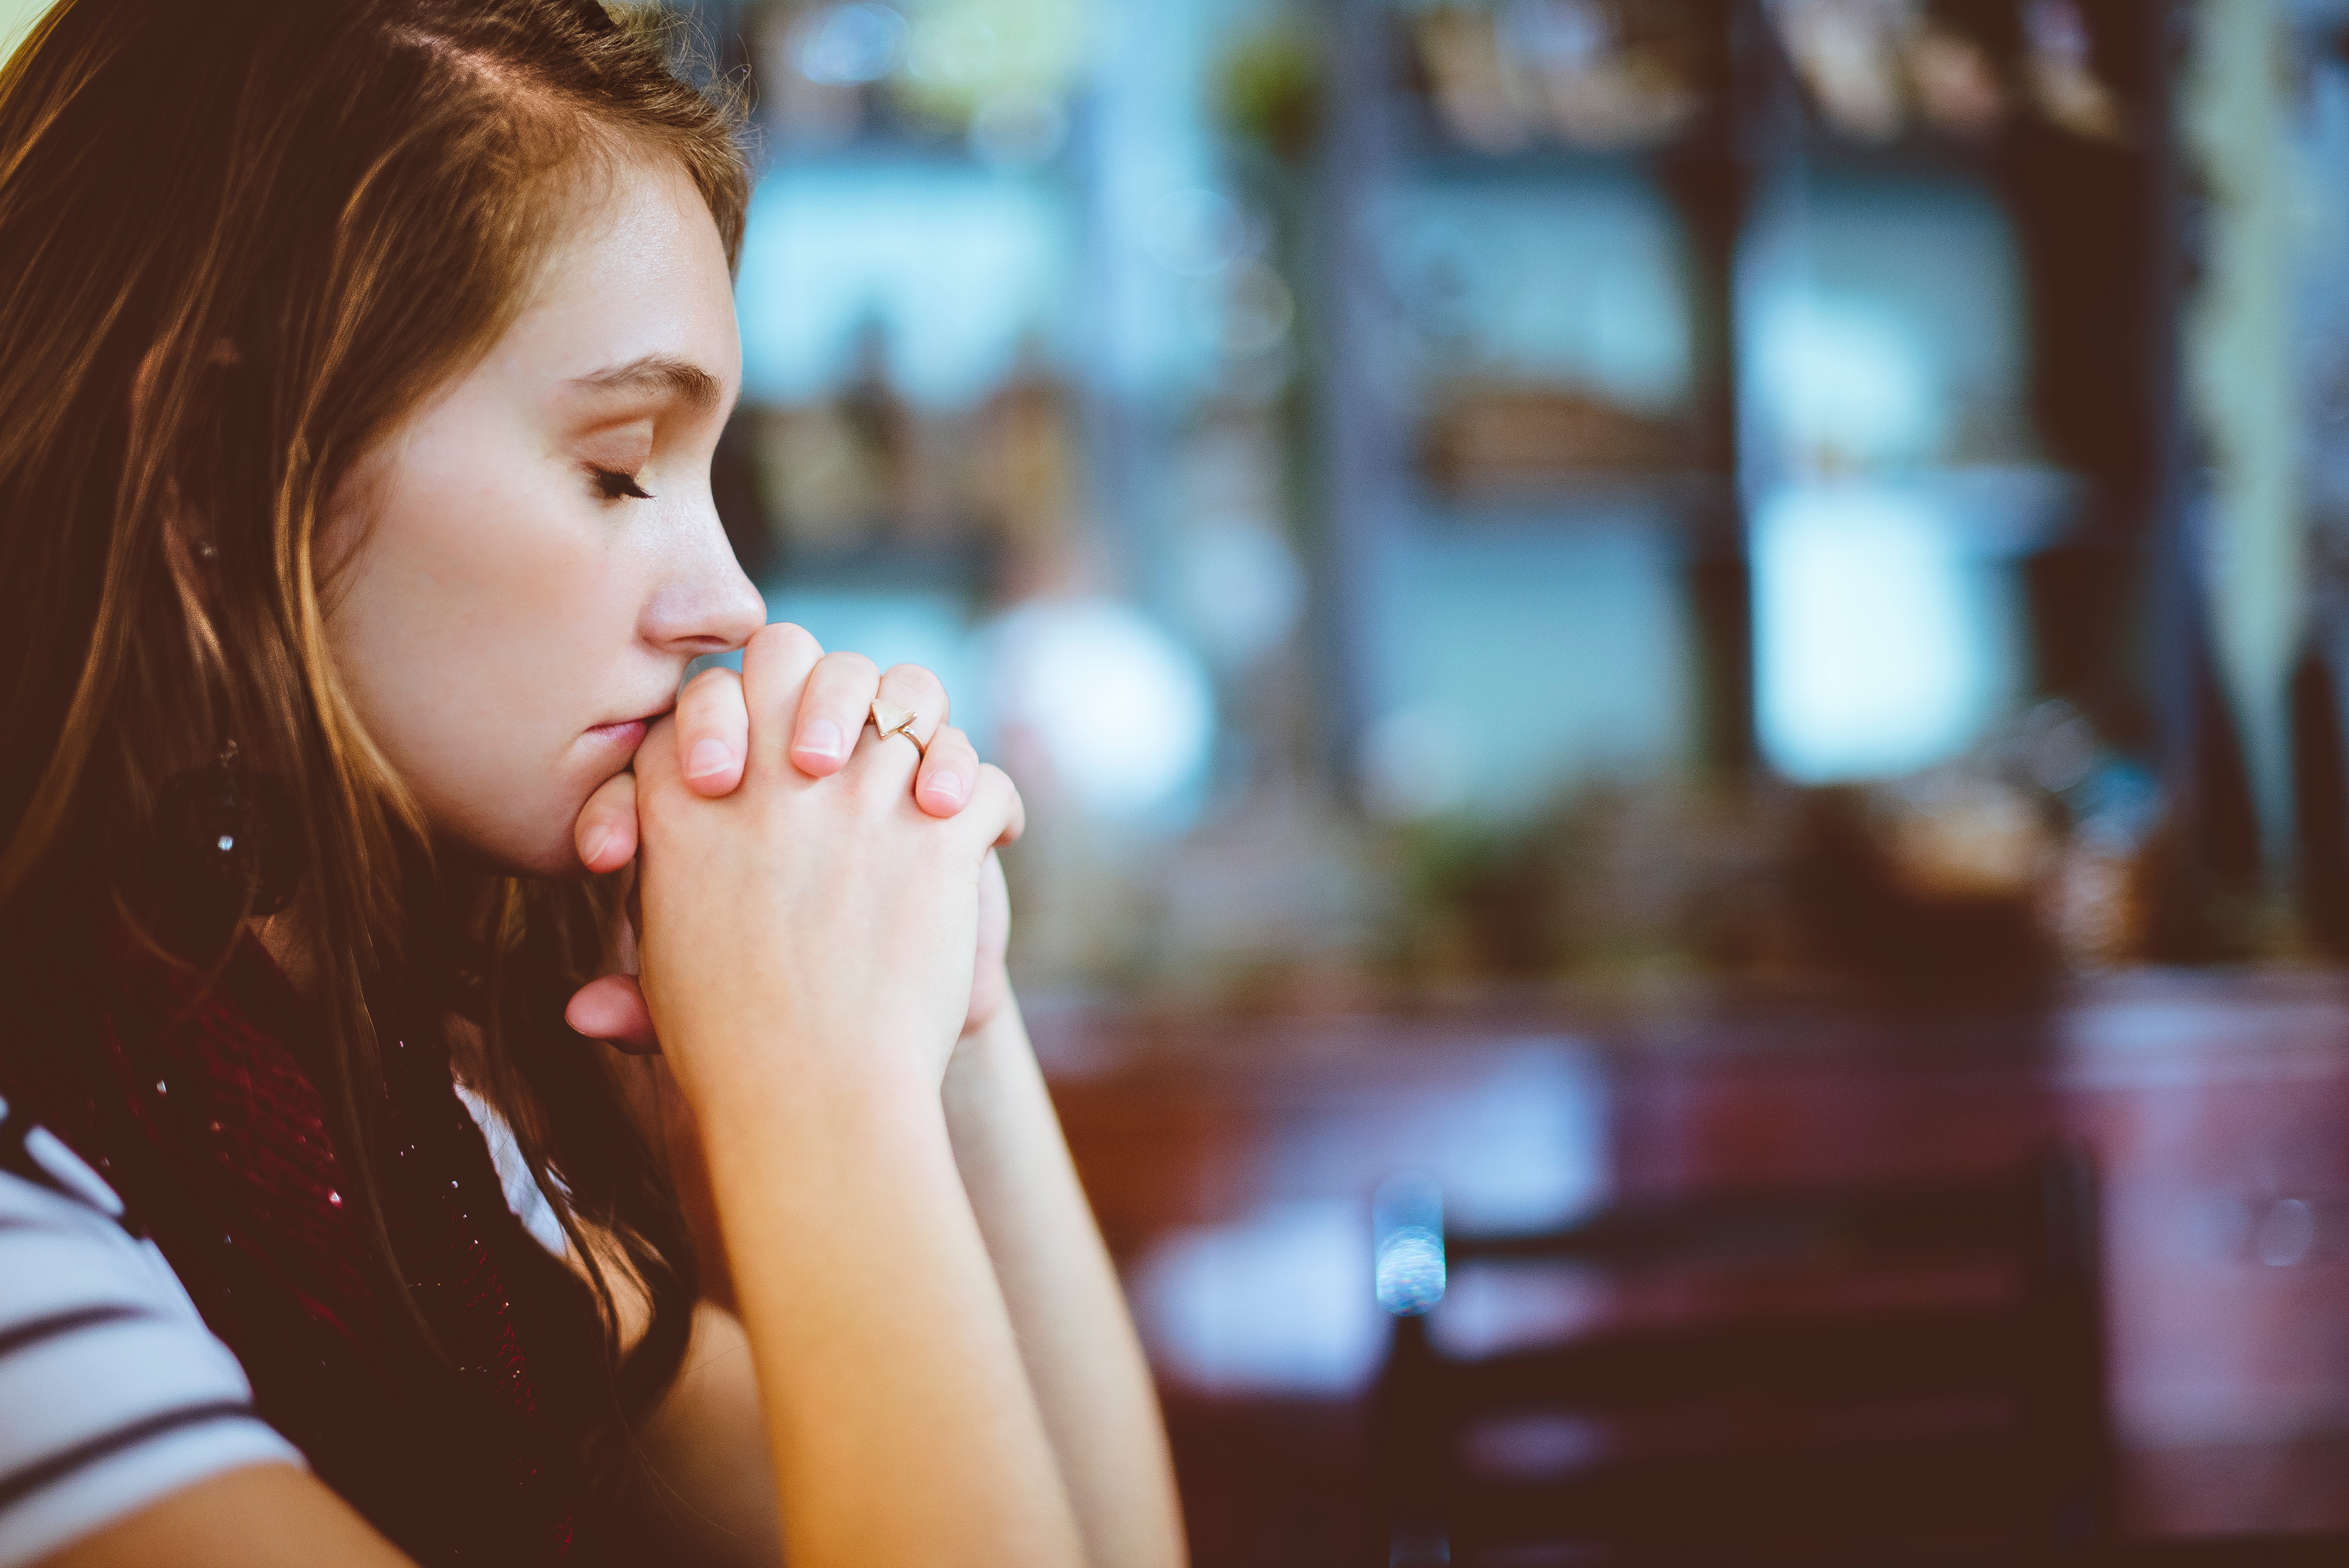 7 ideas para rezar todos los días si eres católico y estás muy ocupado